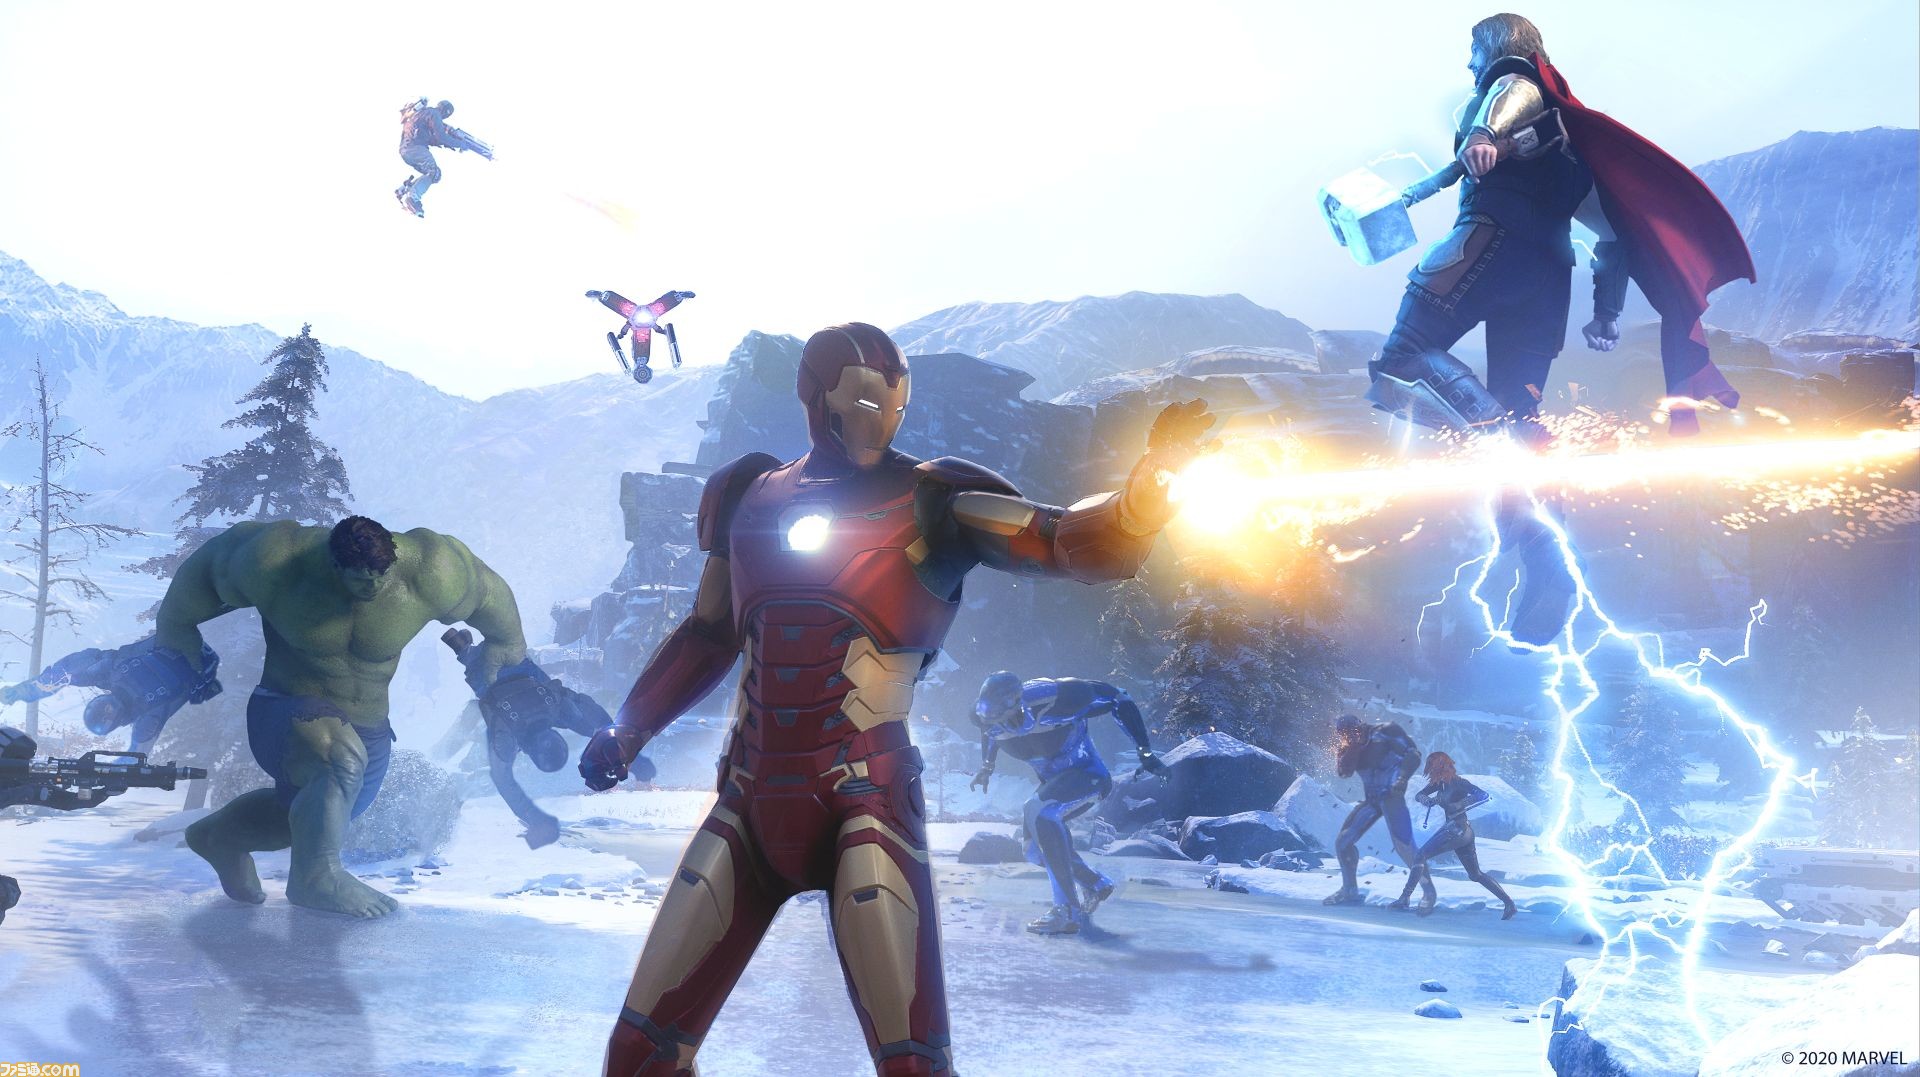 Amazon予約数ランキング Marvel S Avengers アベンジャーズ が大幅にランクアップして首位に 8 2 8 8 ファミ通 Com